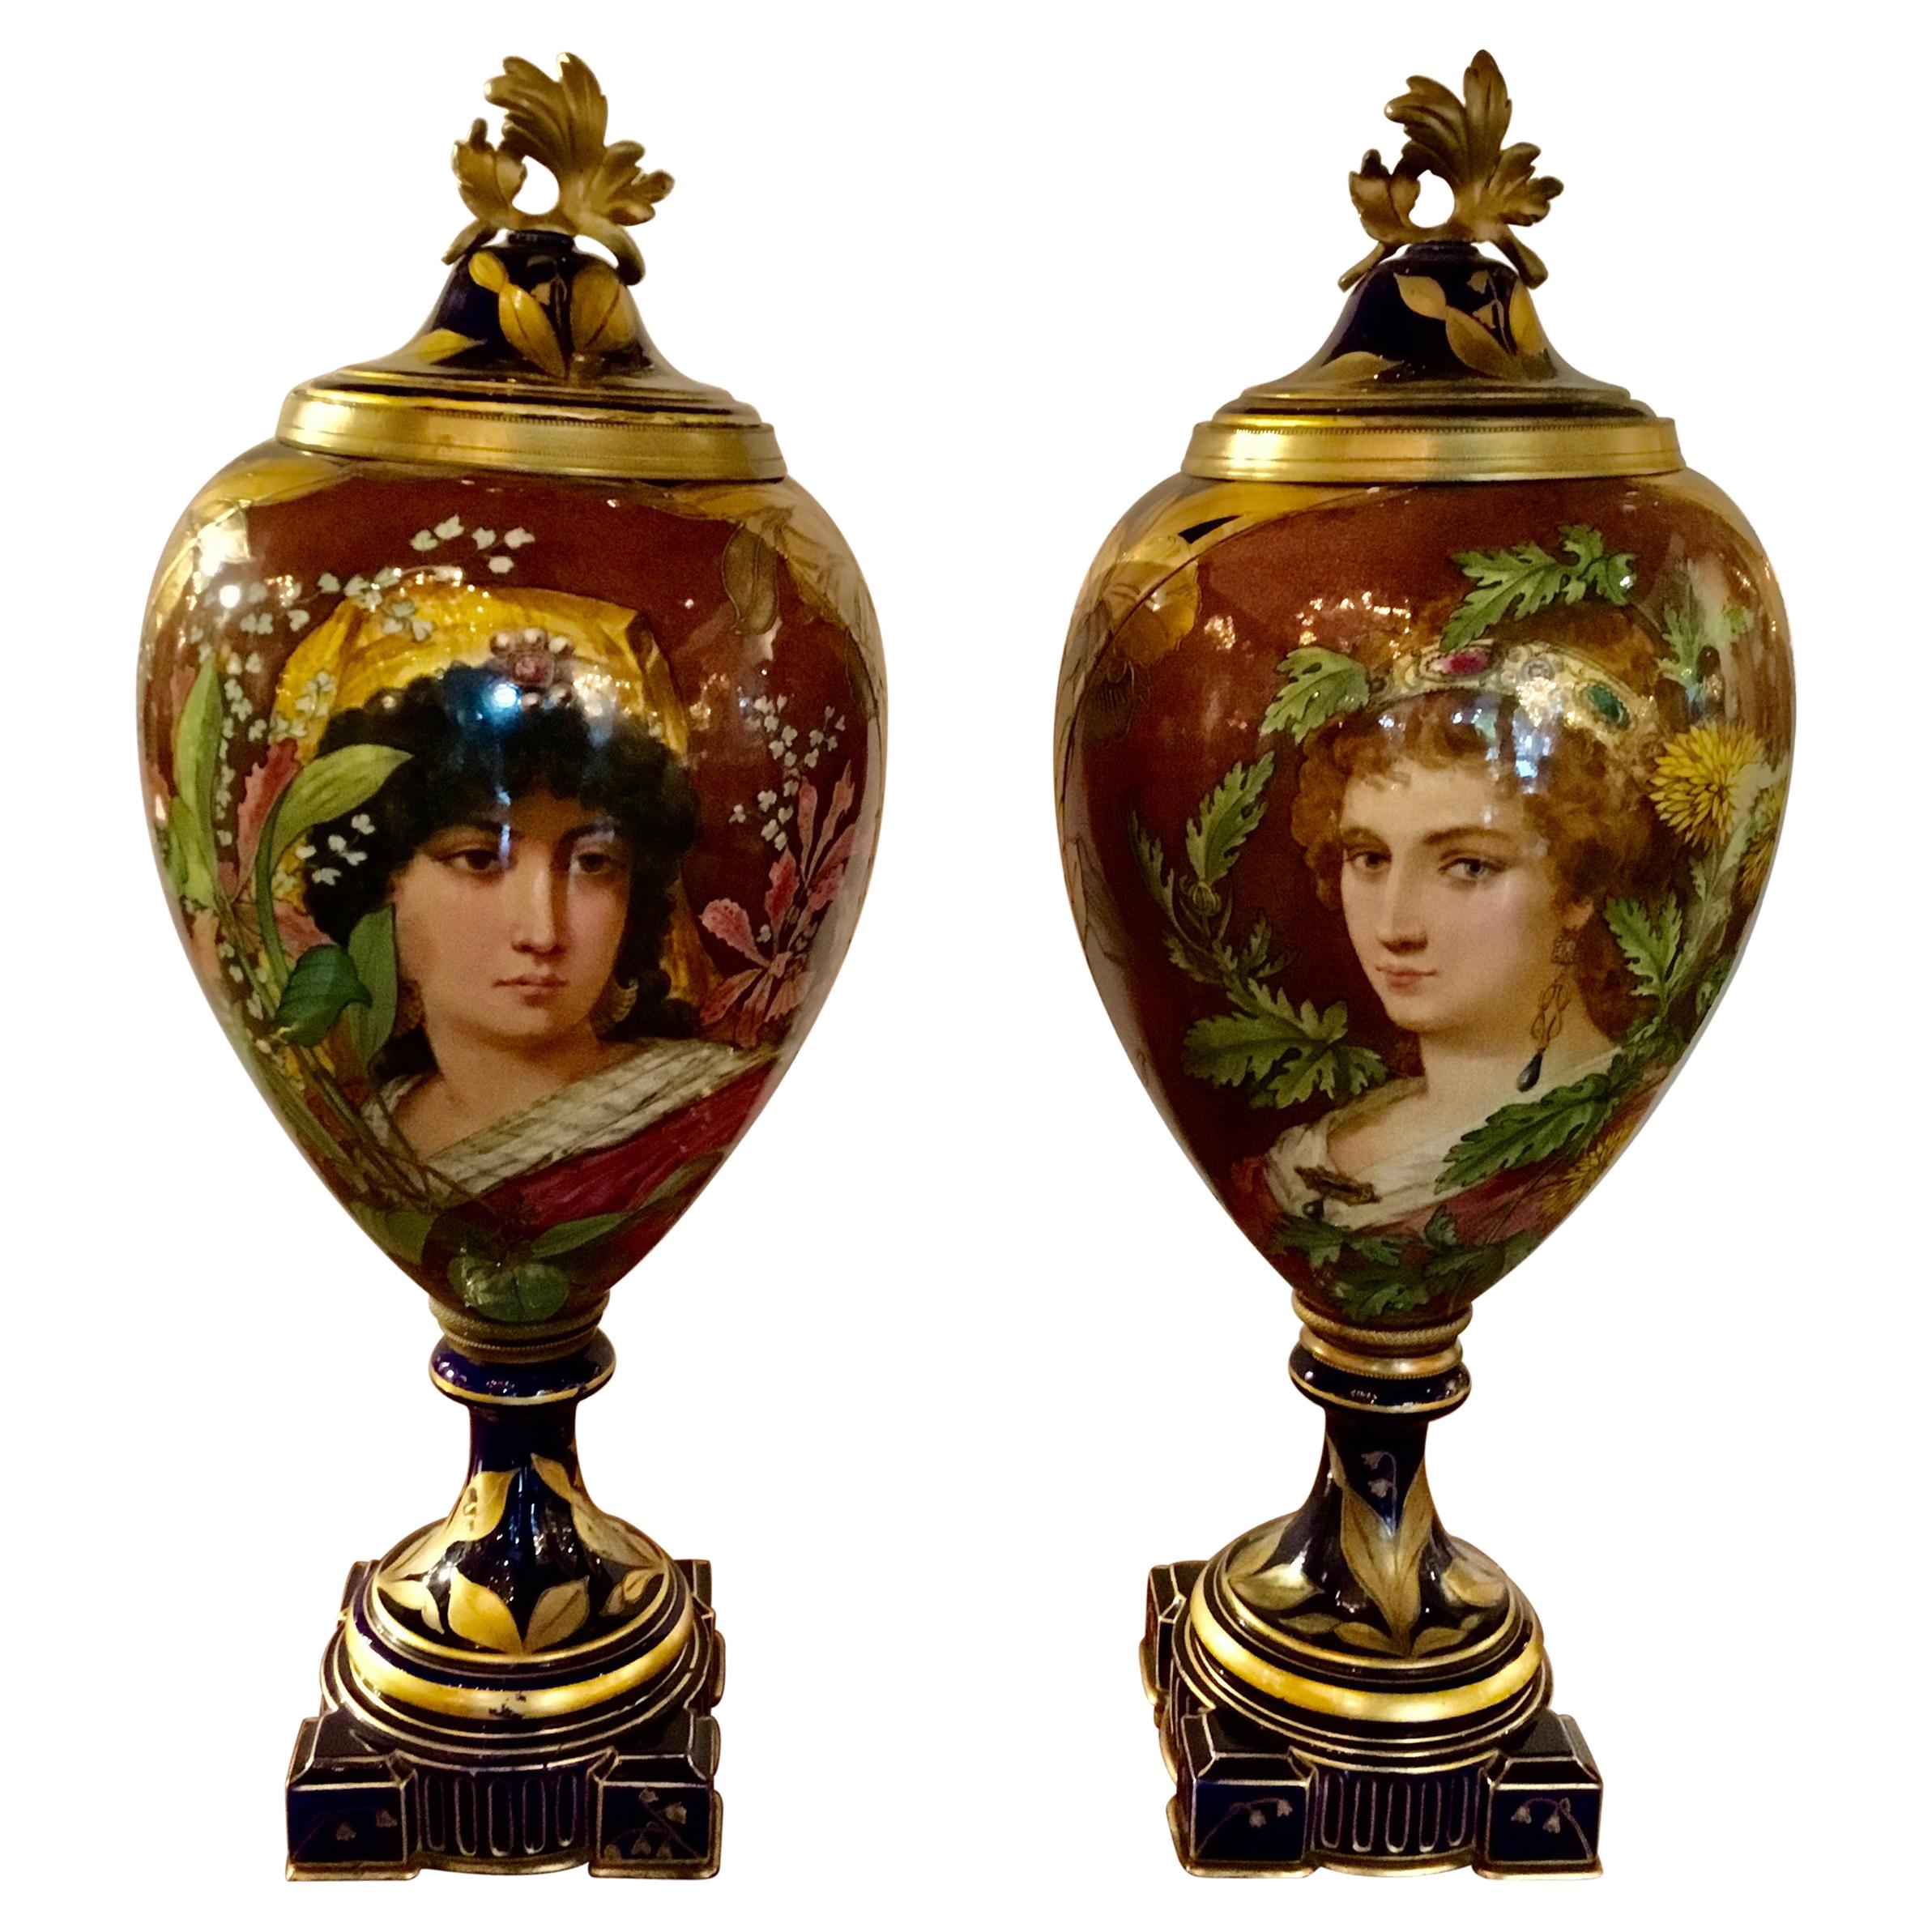 Paire d'urnes à portraits en porcelaine française de style Art nouveau, montées sur bronze doré, vers 1900